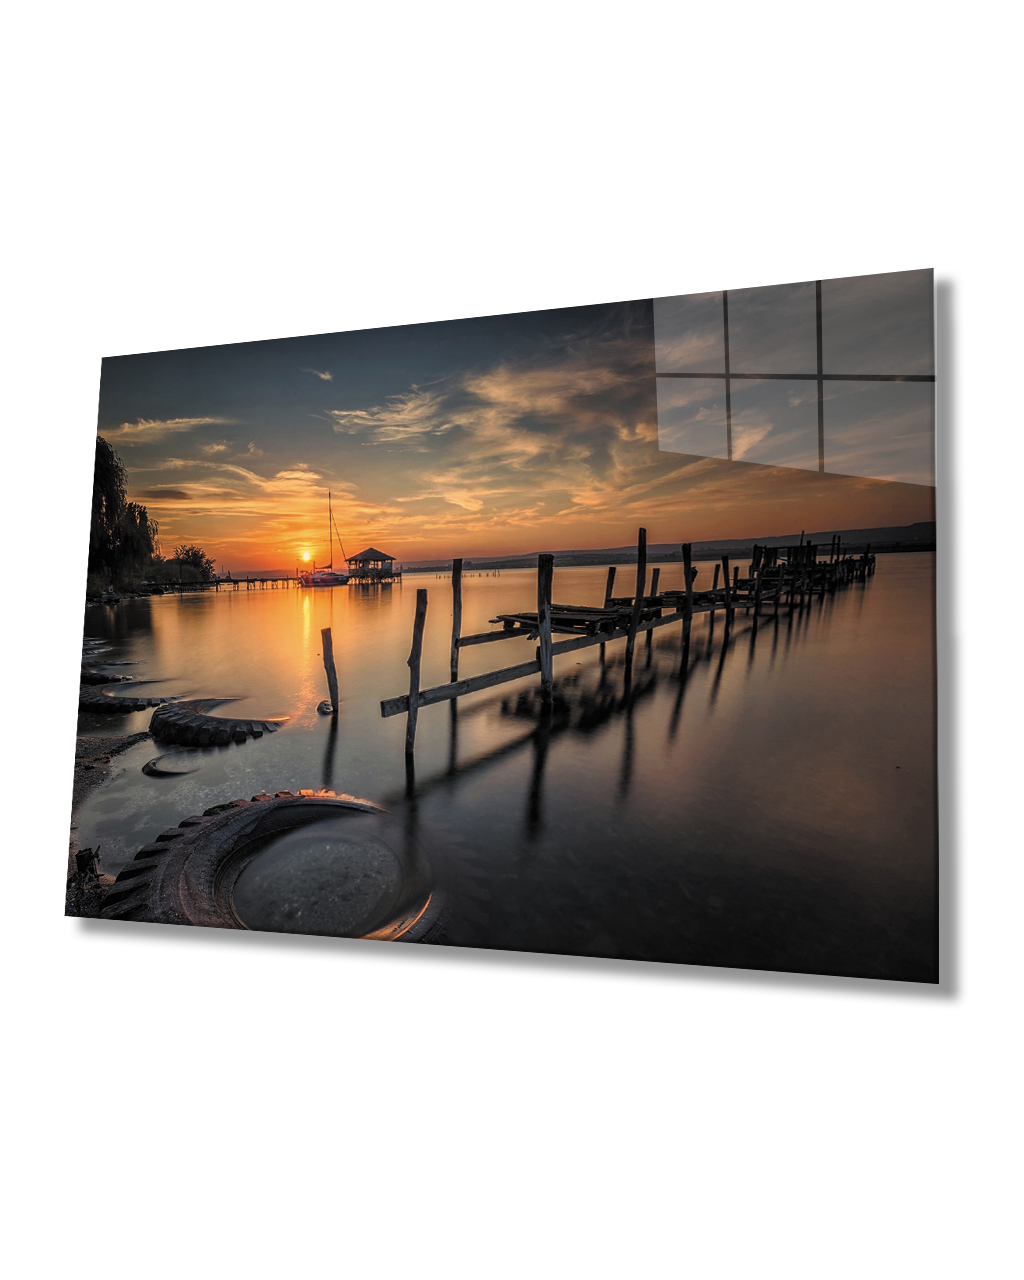 Gün Batımı Deniz Manzarası Cam Tablo  4mm Dayanıklı Temperli Cam Sunset Seascape Glass Table 4mm Durable Tempered Glass